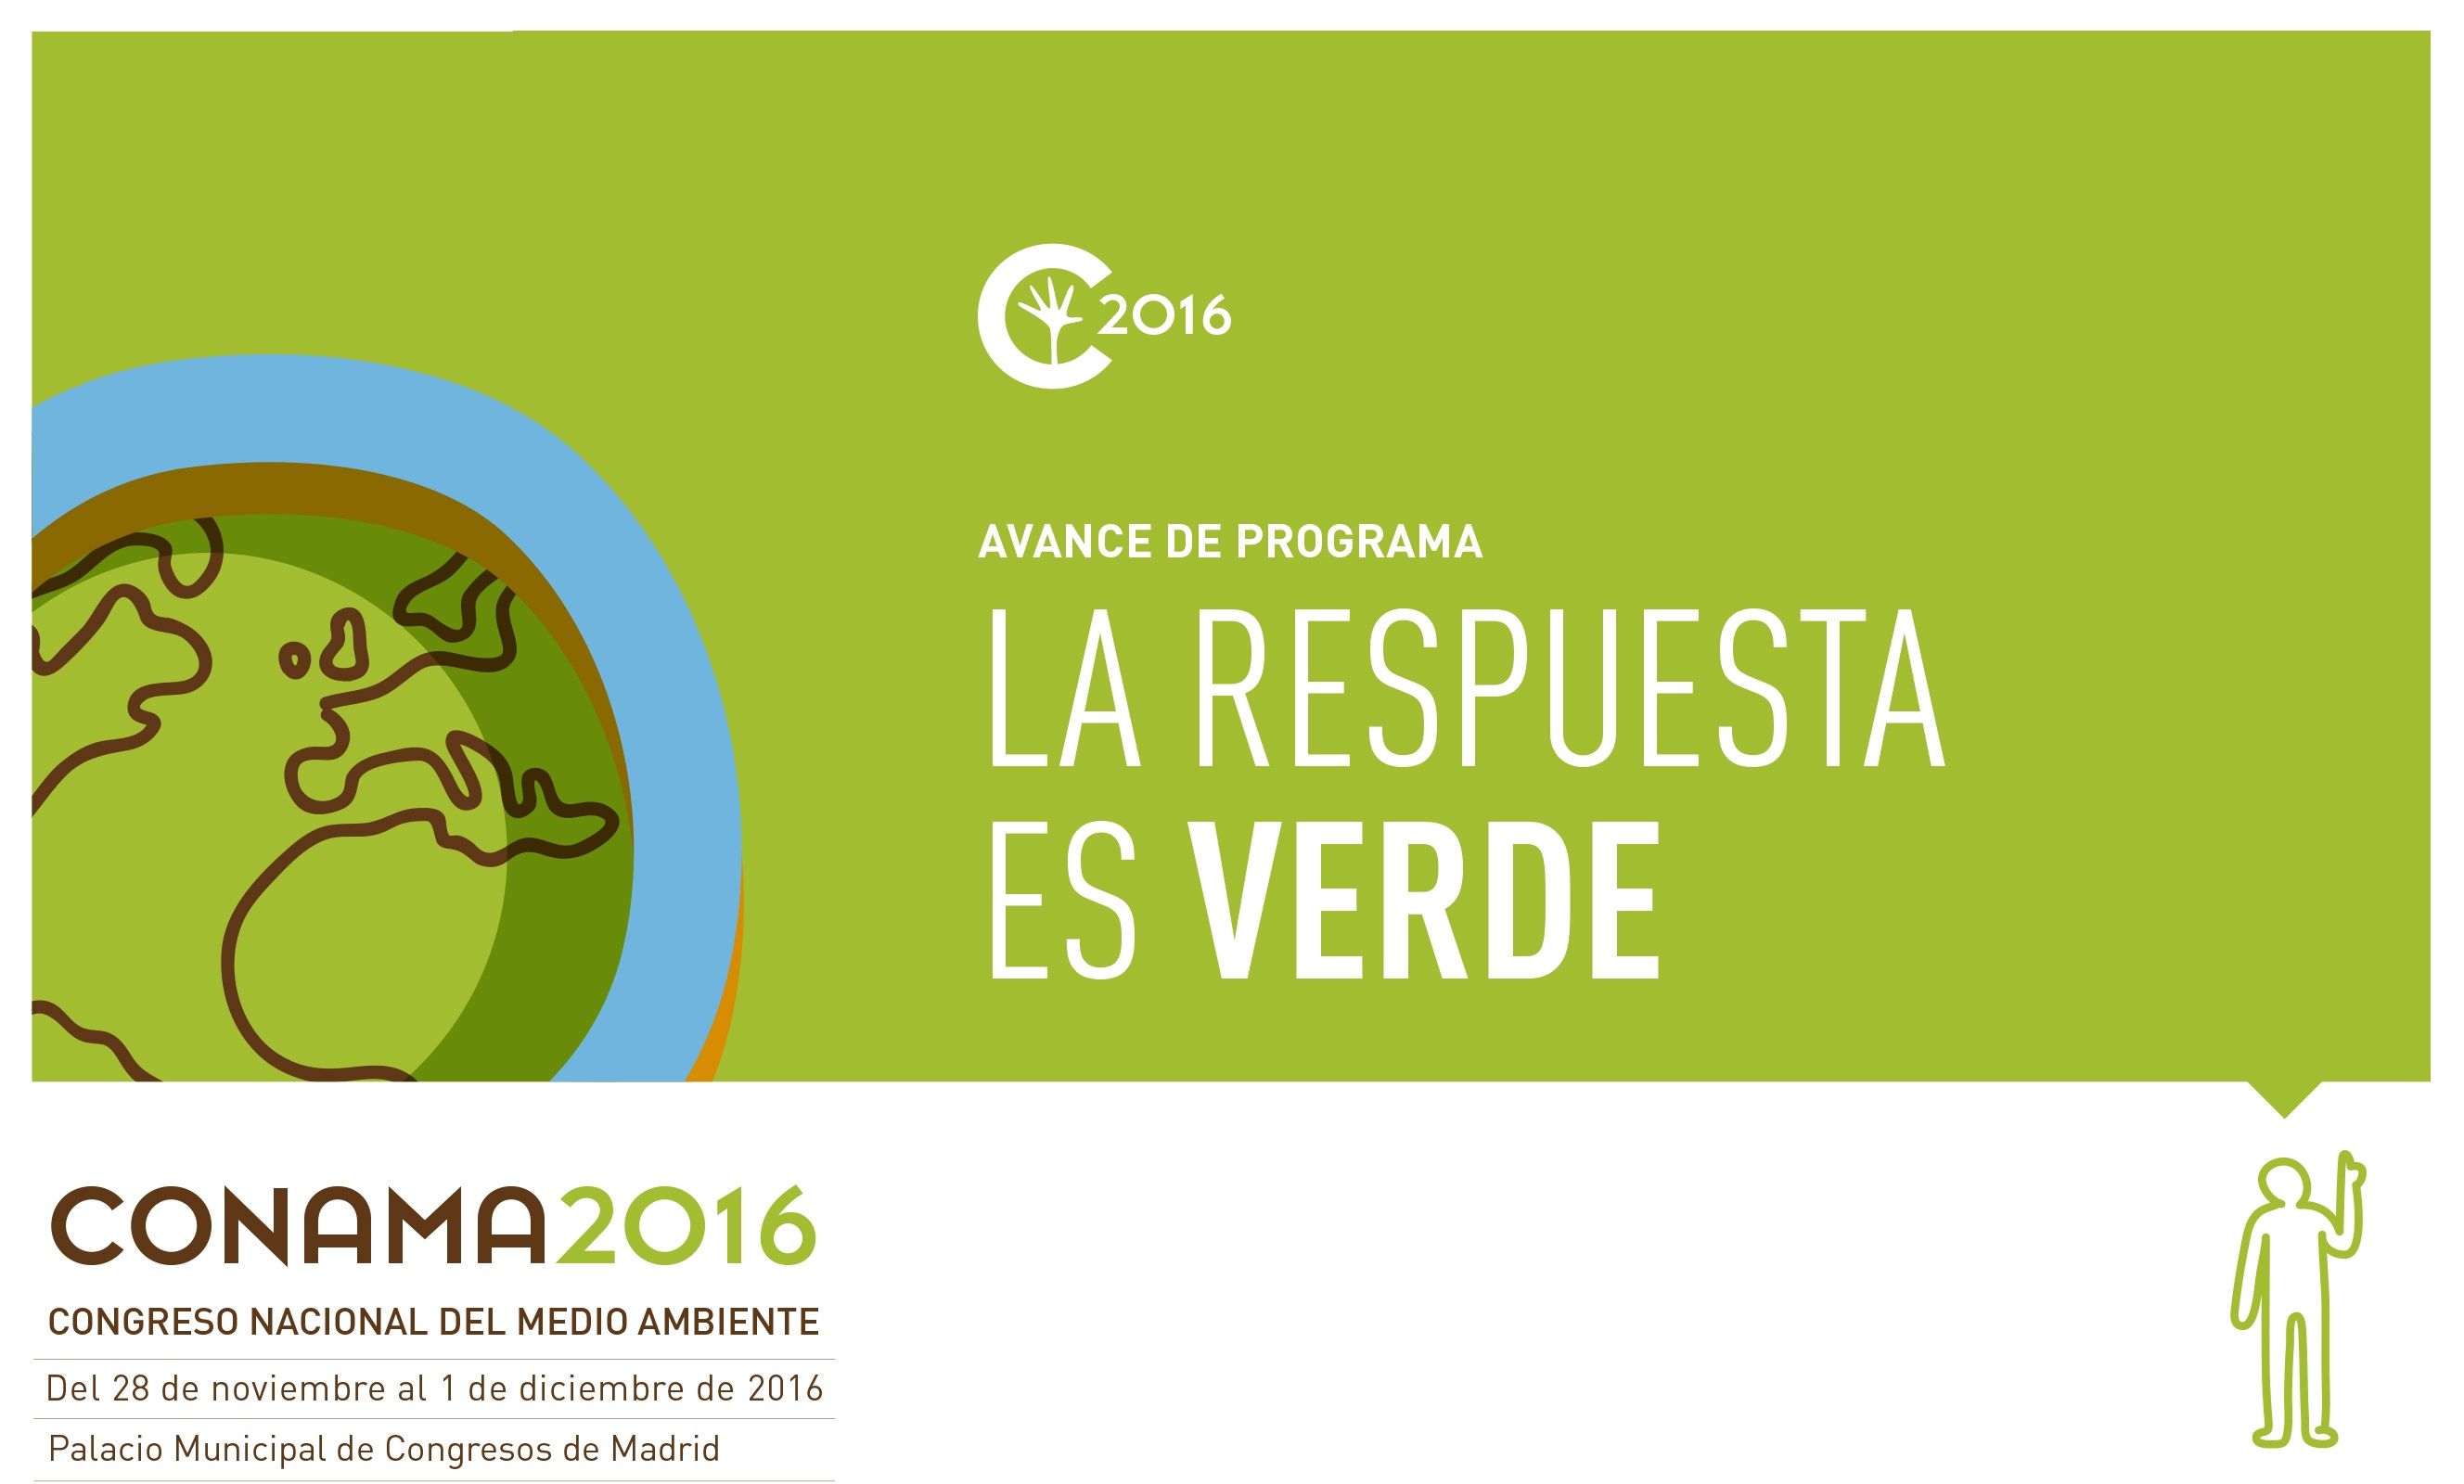 La 13ª edición del Congreso Nacional del Medio Ambiente (Conama 2016) se celebrará del 28 de noviembre al 1 de diciembre en Madrid.